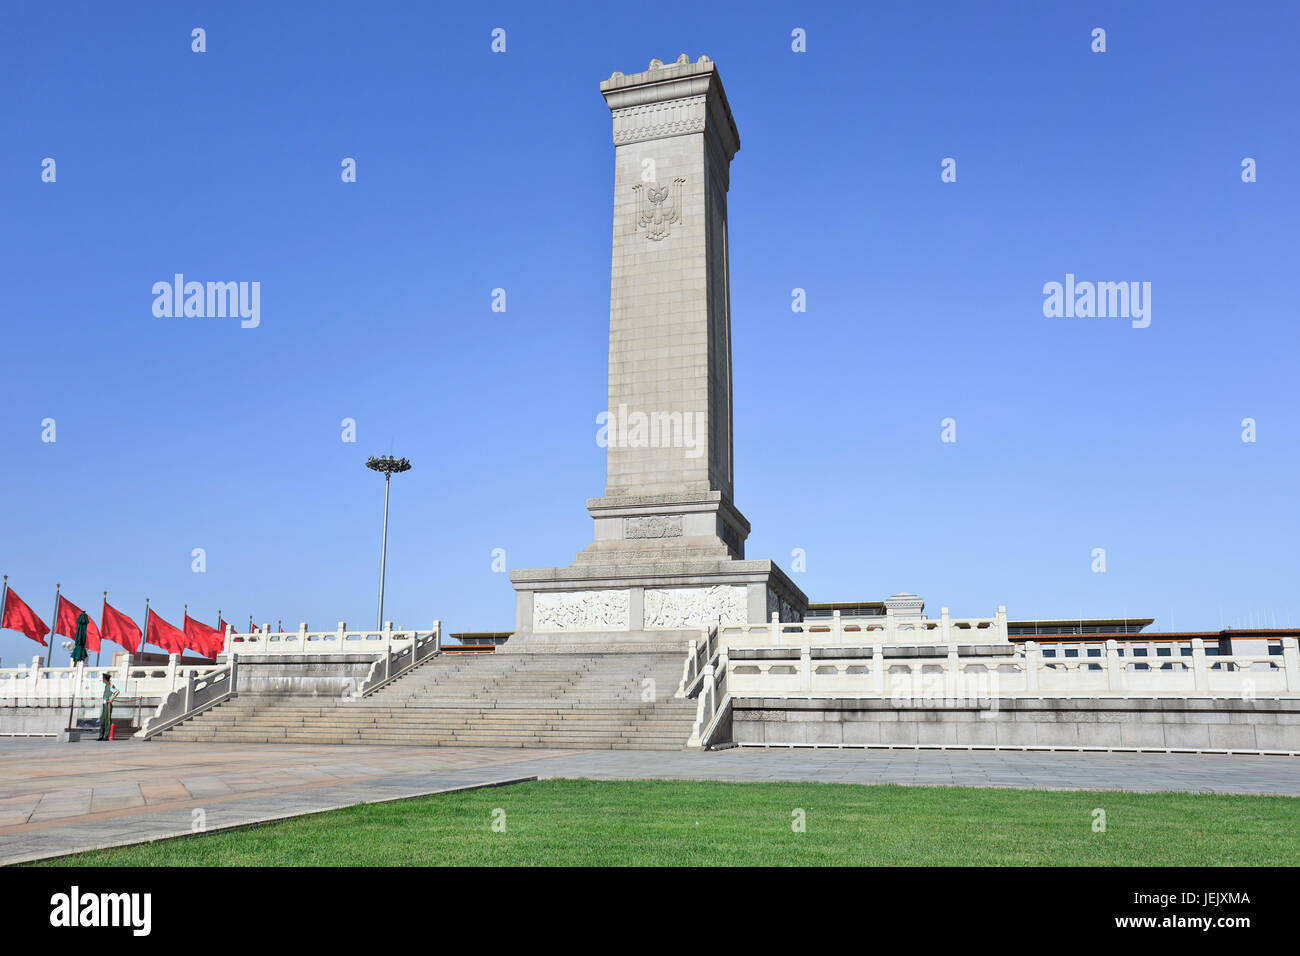 Monumento agli Eroi del Popolo, un obelisco di 38 metri come monumento nazionale della Repubblica popolare Cinese ai suoi rivoluzionari martiri in Piazza Tiananmen. Foto Stock